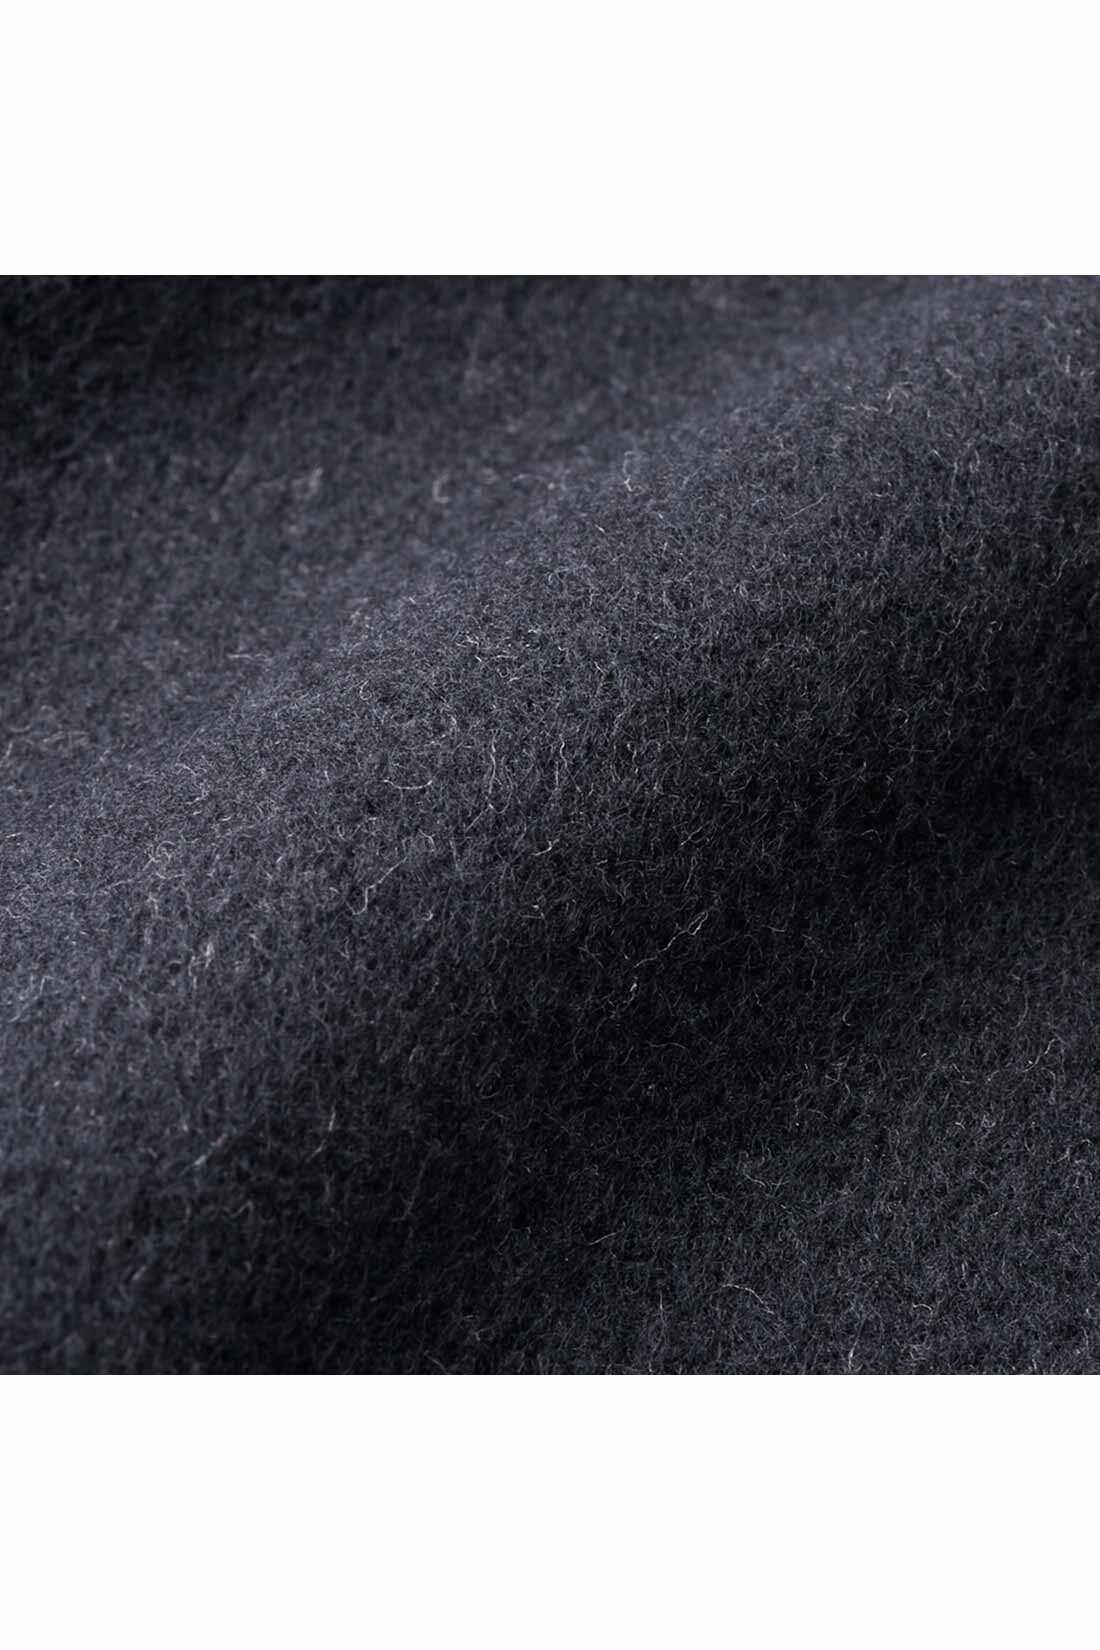 IEDIT[イディット]　光吸収発熱素材＆裏起毛でいつでも暖かな きれいめストレッチスリムパンツ〈ブラック〉|厚みのあるカットソーの裏側は、あったか起毛素材。